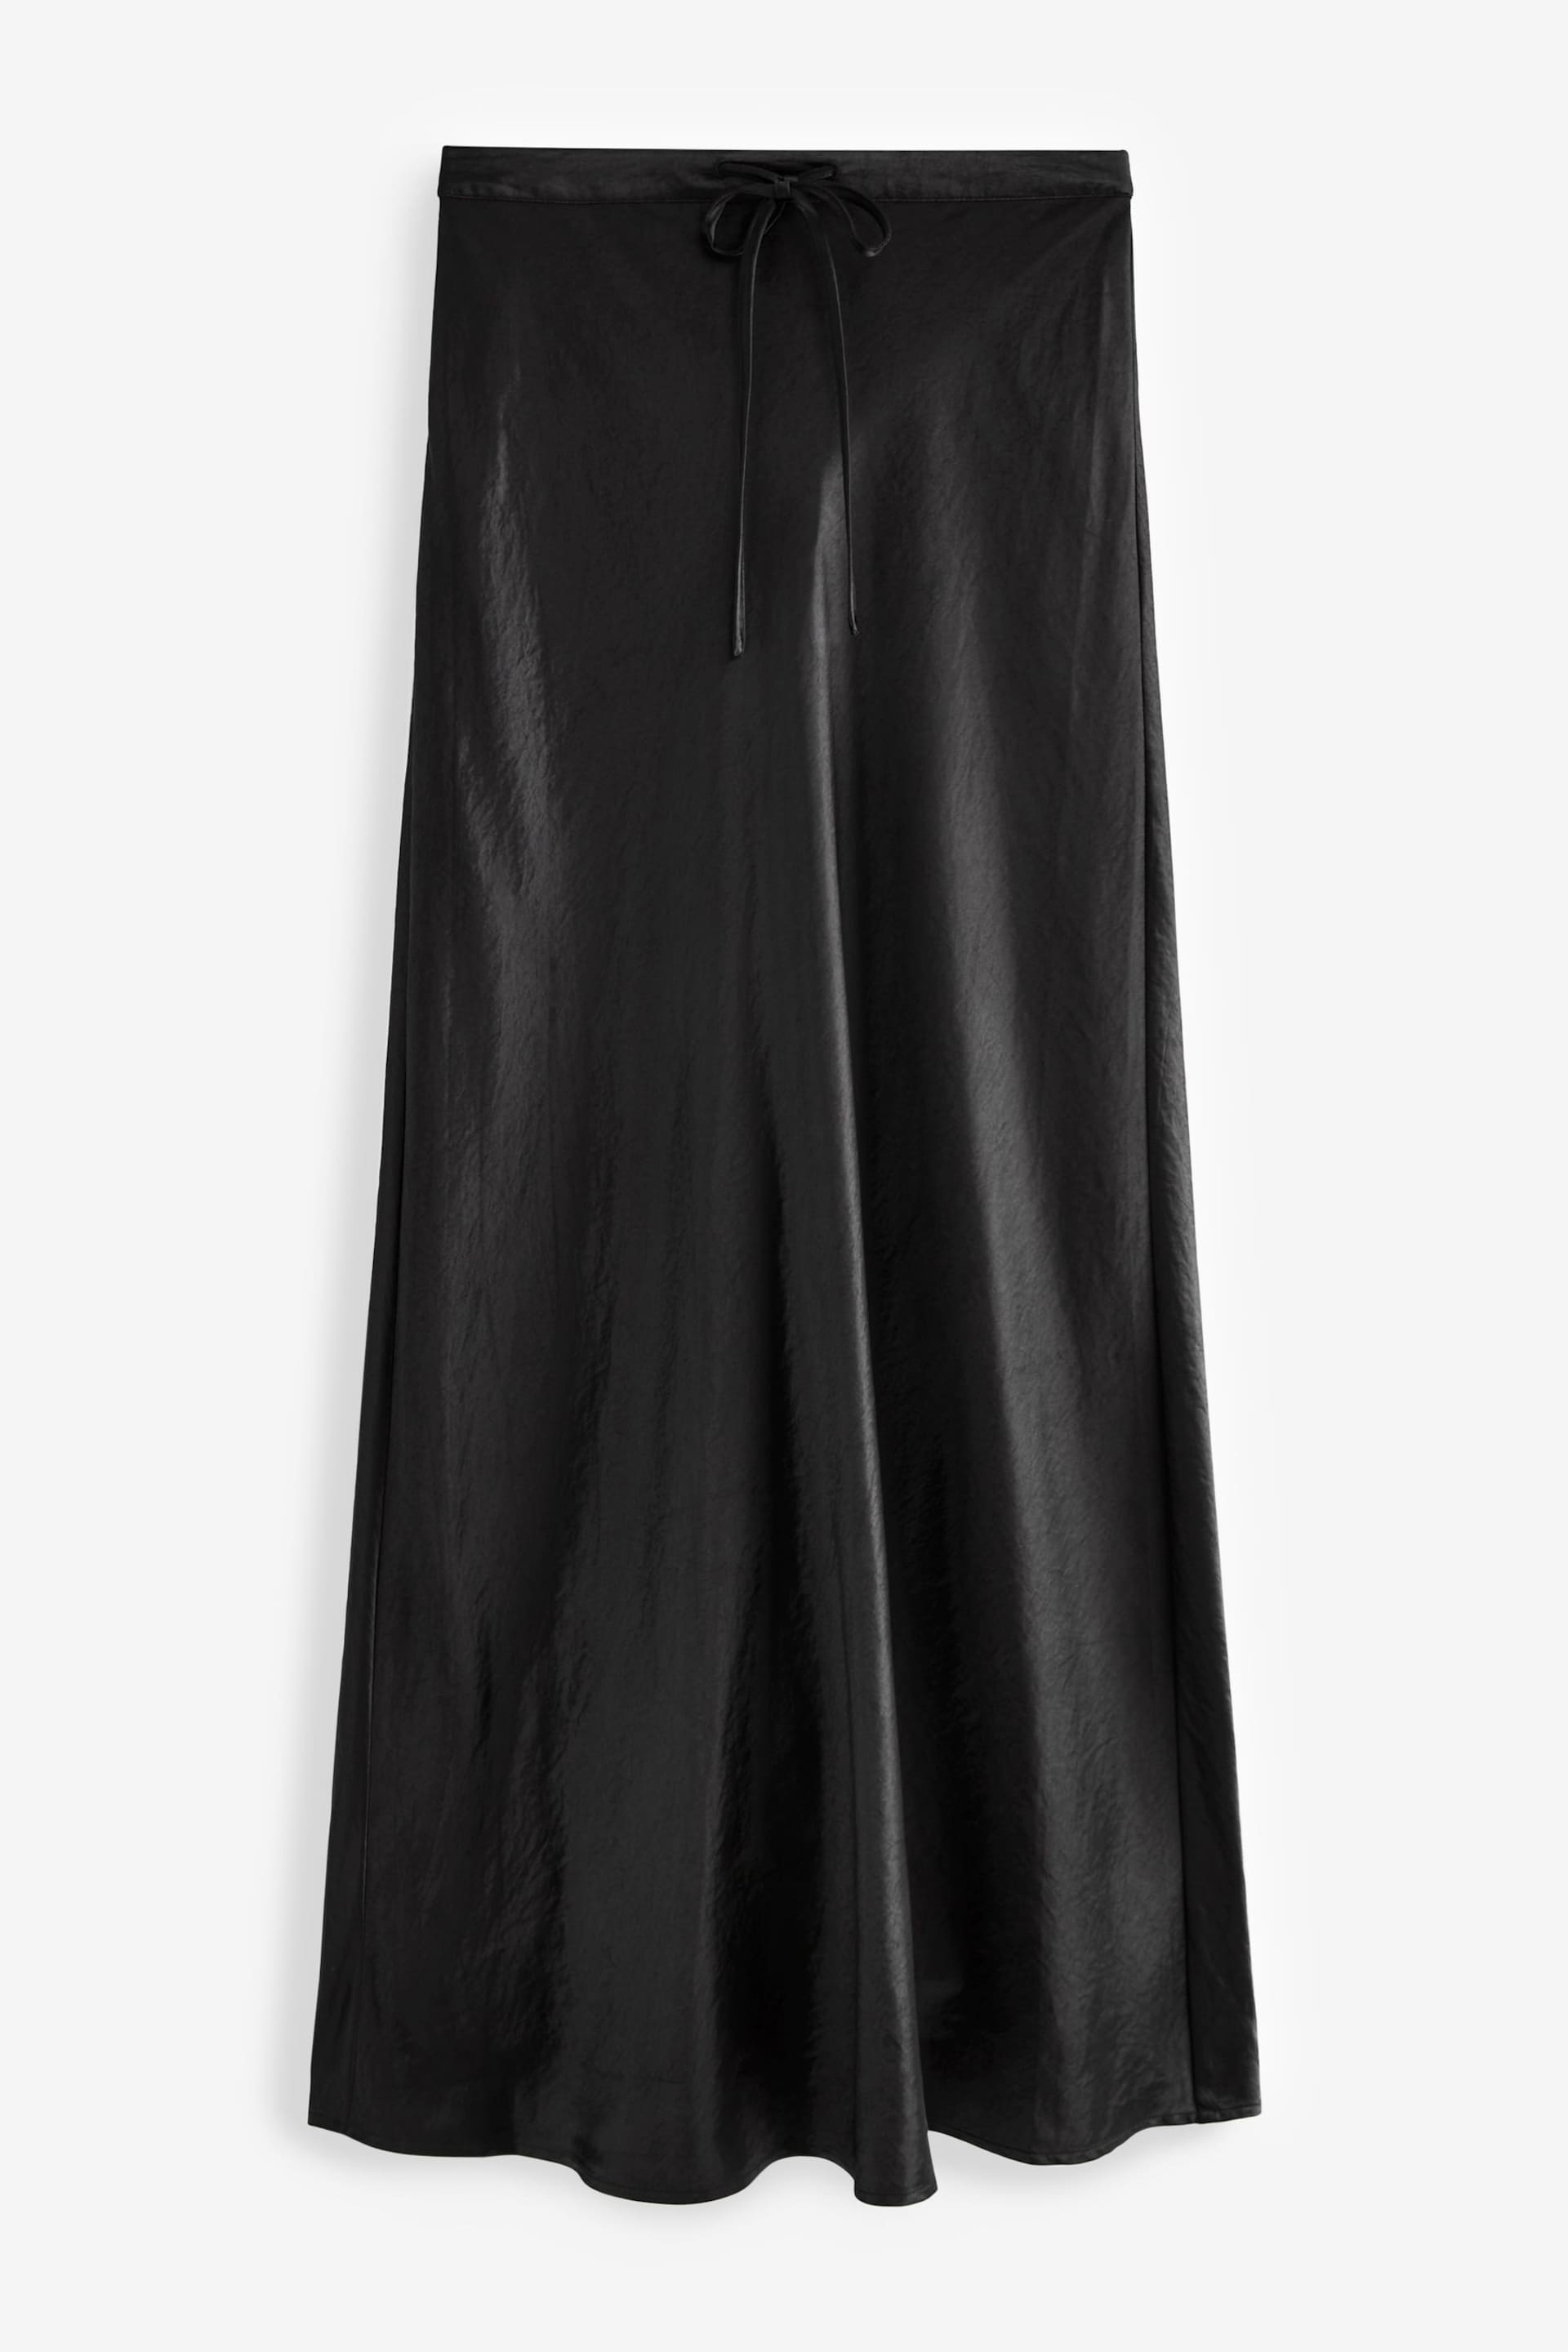 Black Long Length Satin Skirt - Image 6 of 7